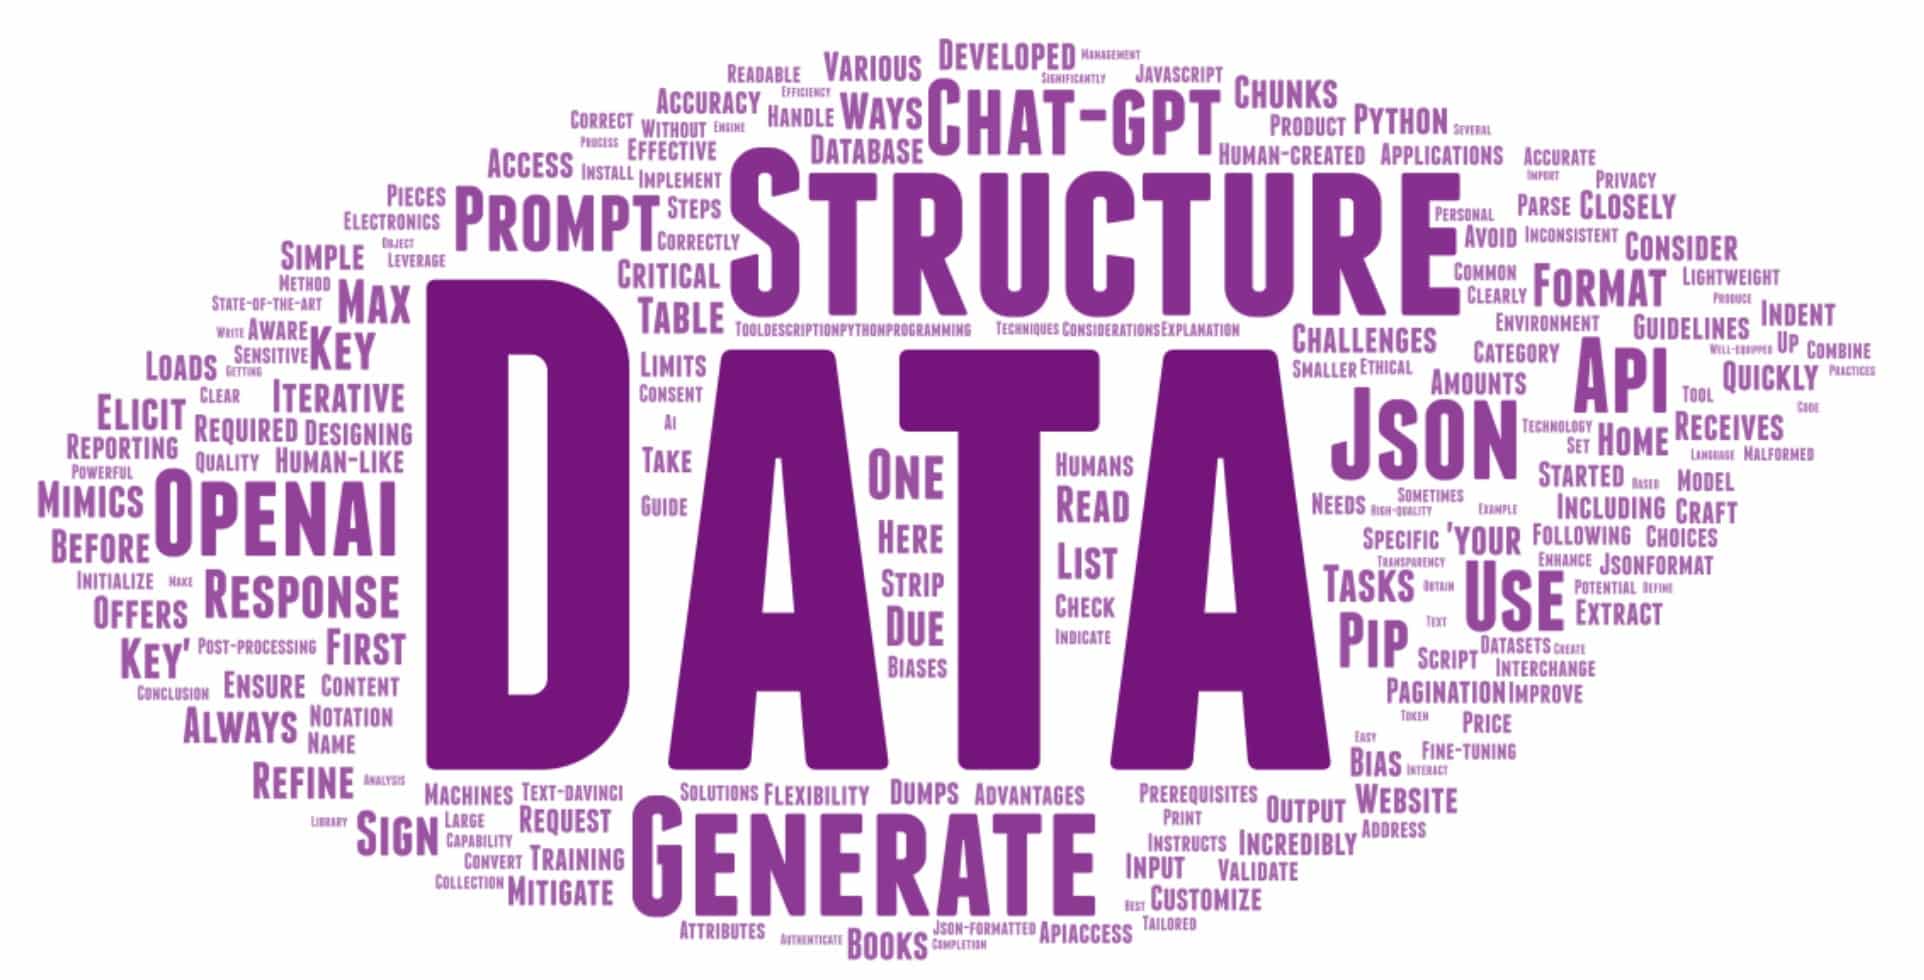 ¿Cómo obtener datos estructurados de Chat-GPT?